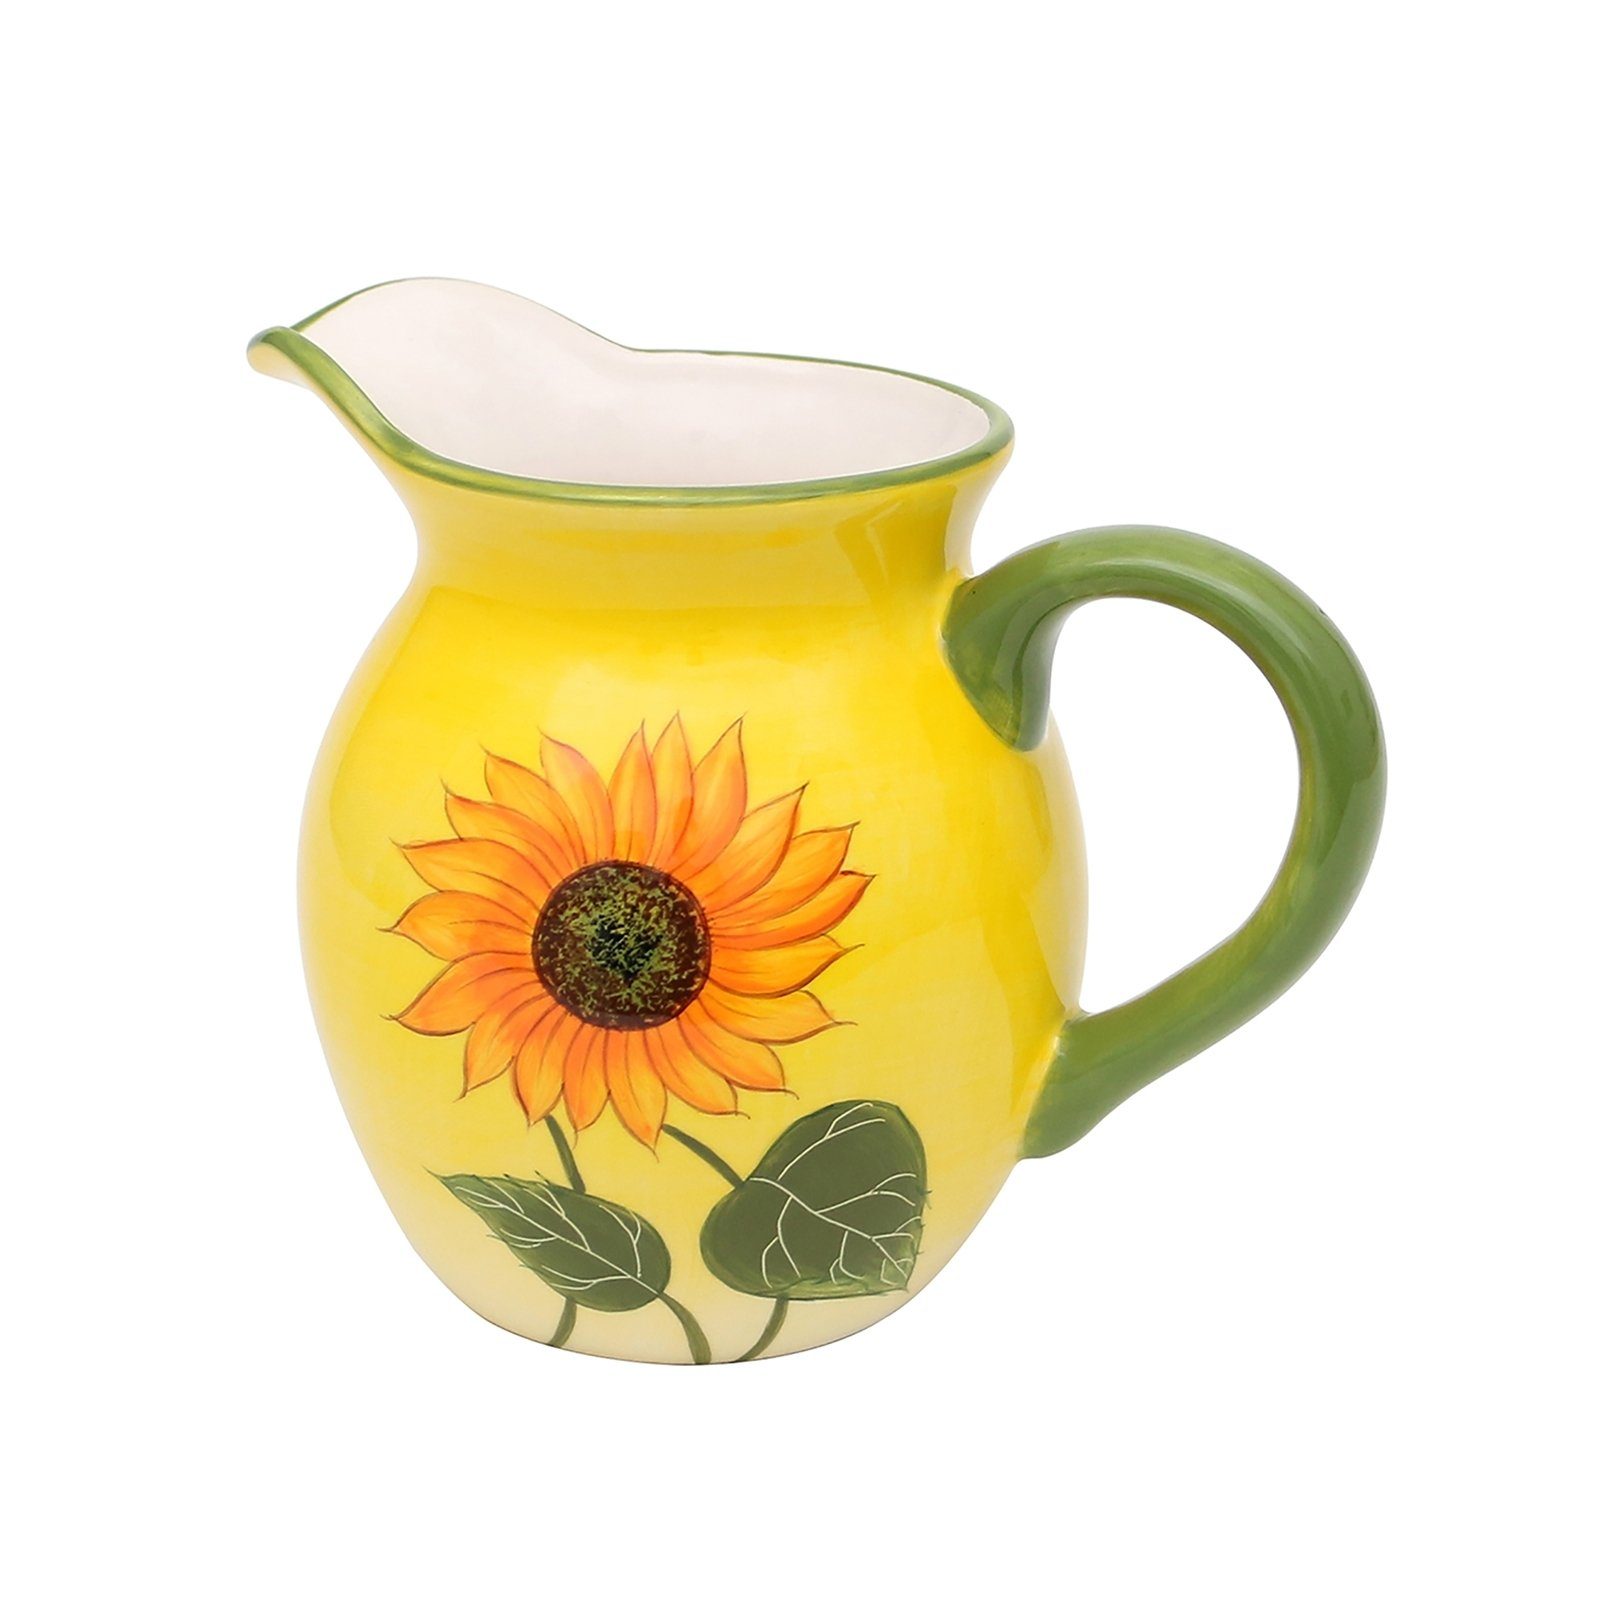 Neuetischkultur Milchkännchen Milchkrug Wasserkrug Saftkrug Sonnenblume, Keramik